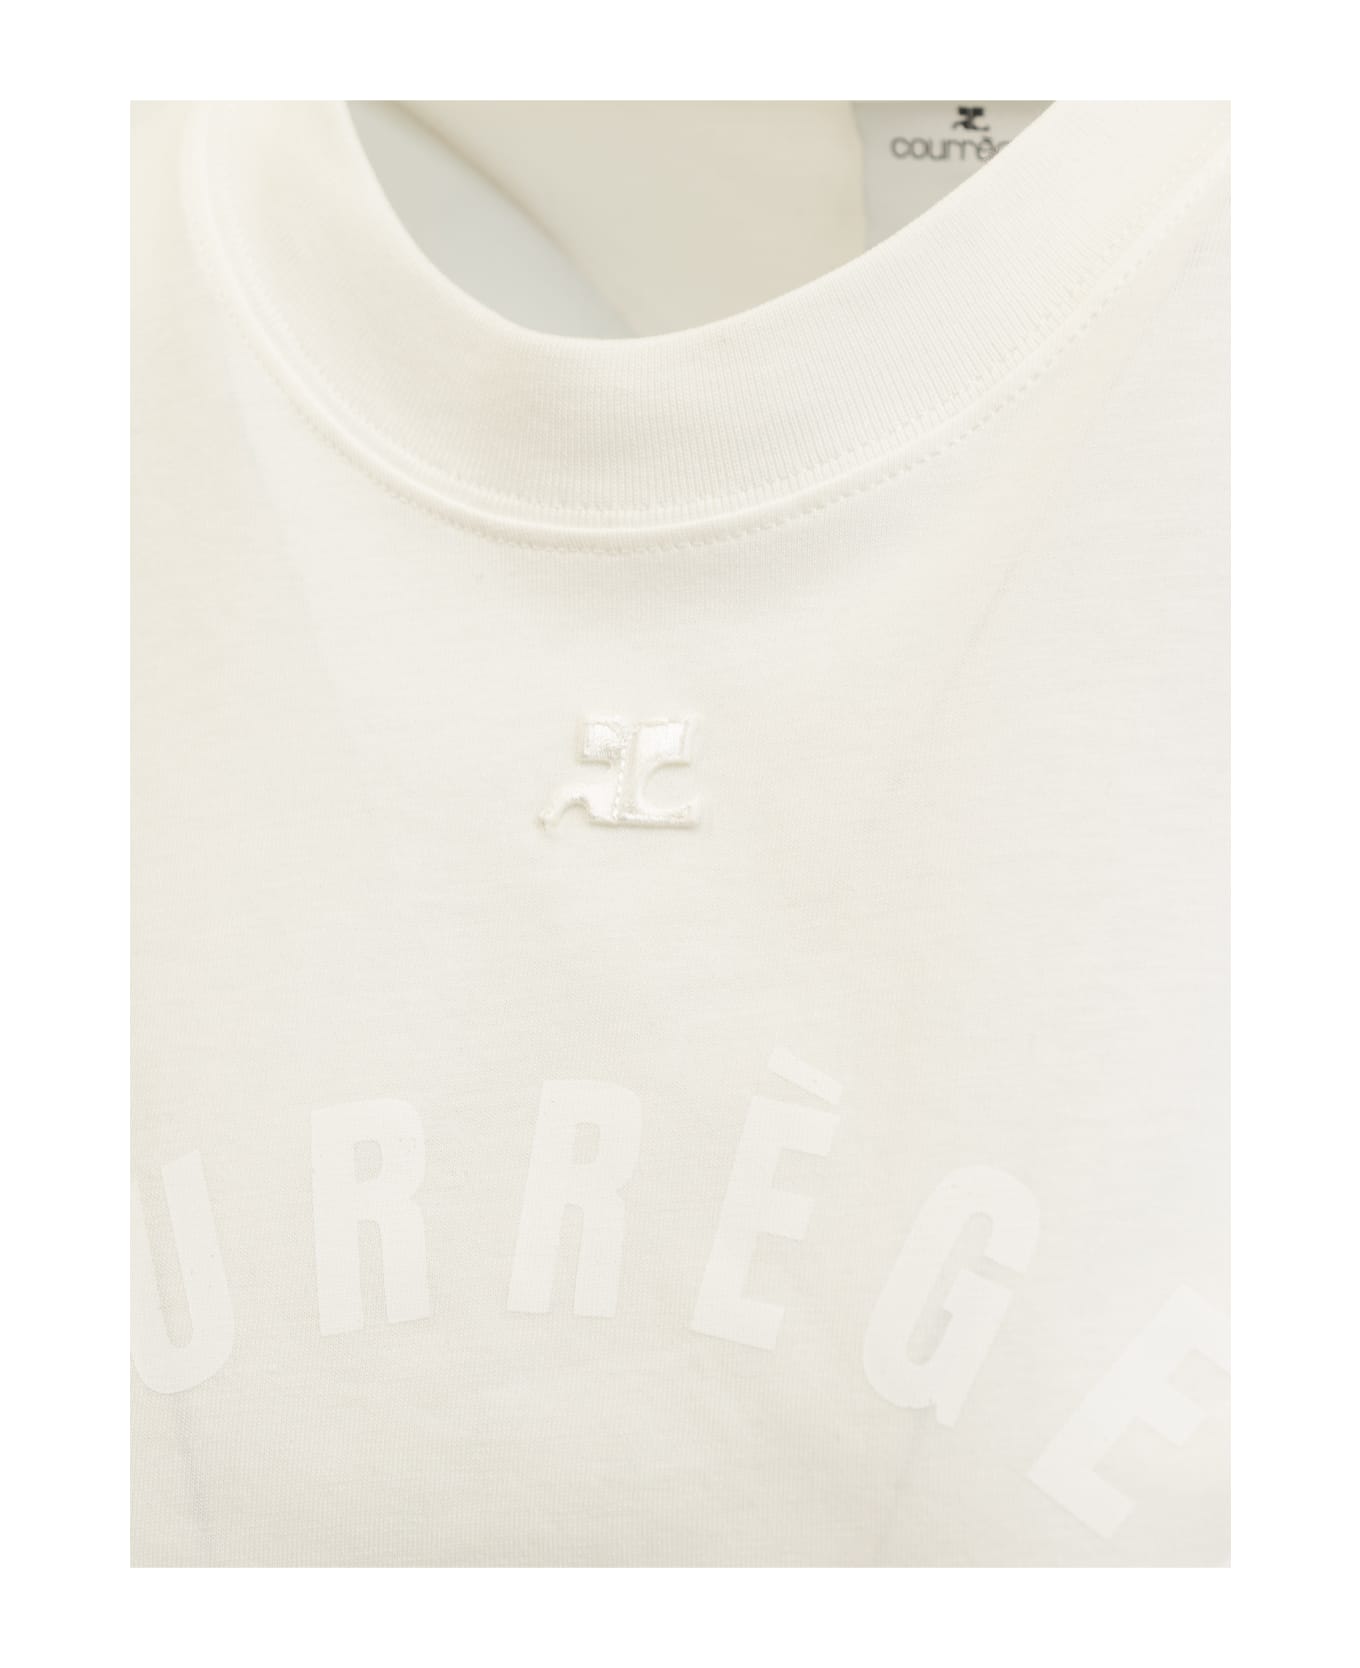 Courrèges Courreges T-shirt - HERITAGE WHITE Tシャツ